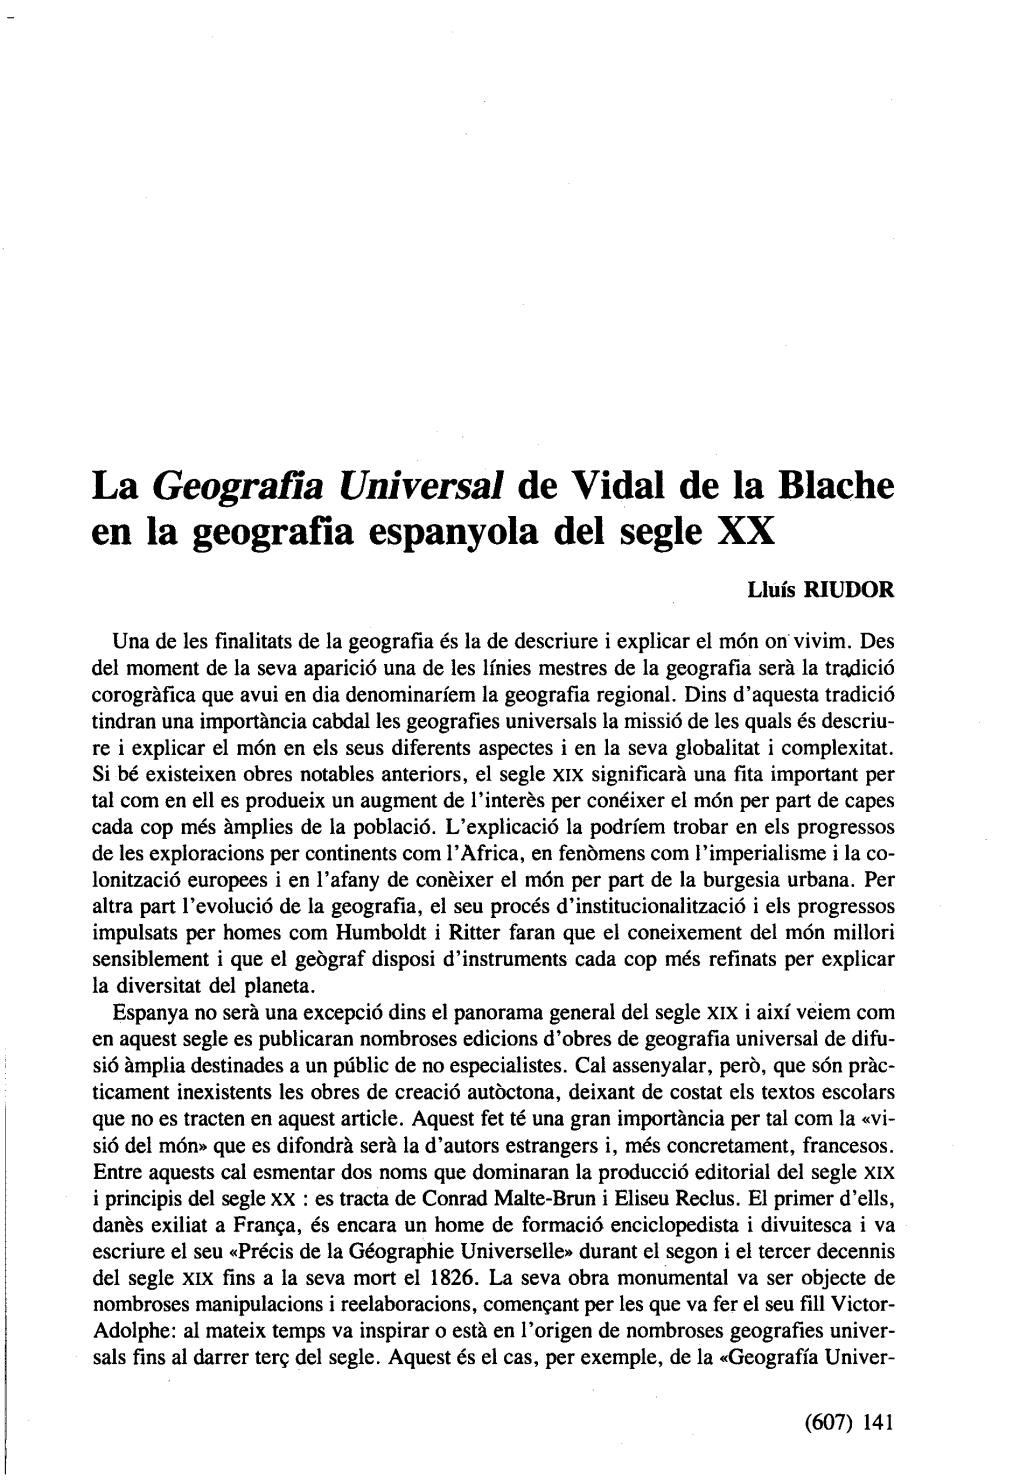 La Geograña Universal De Vidal De La Blache En La Geografia Espanyola Del Segle XX